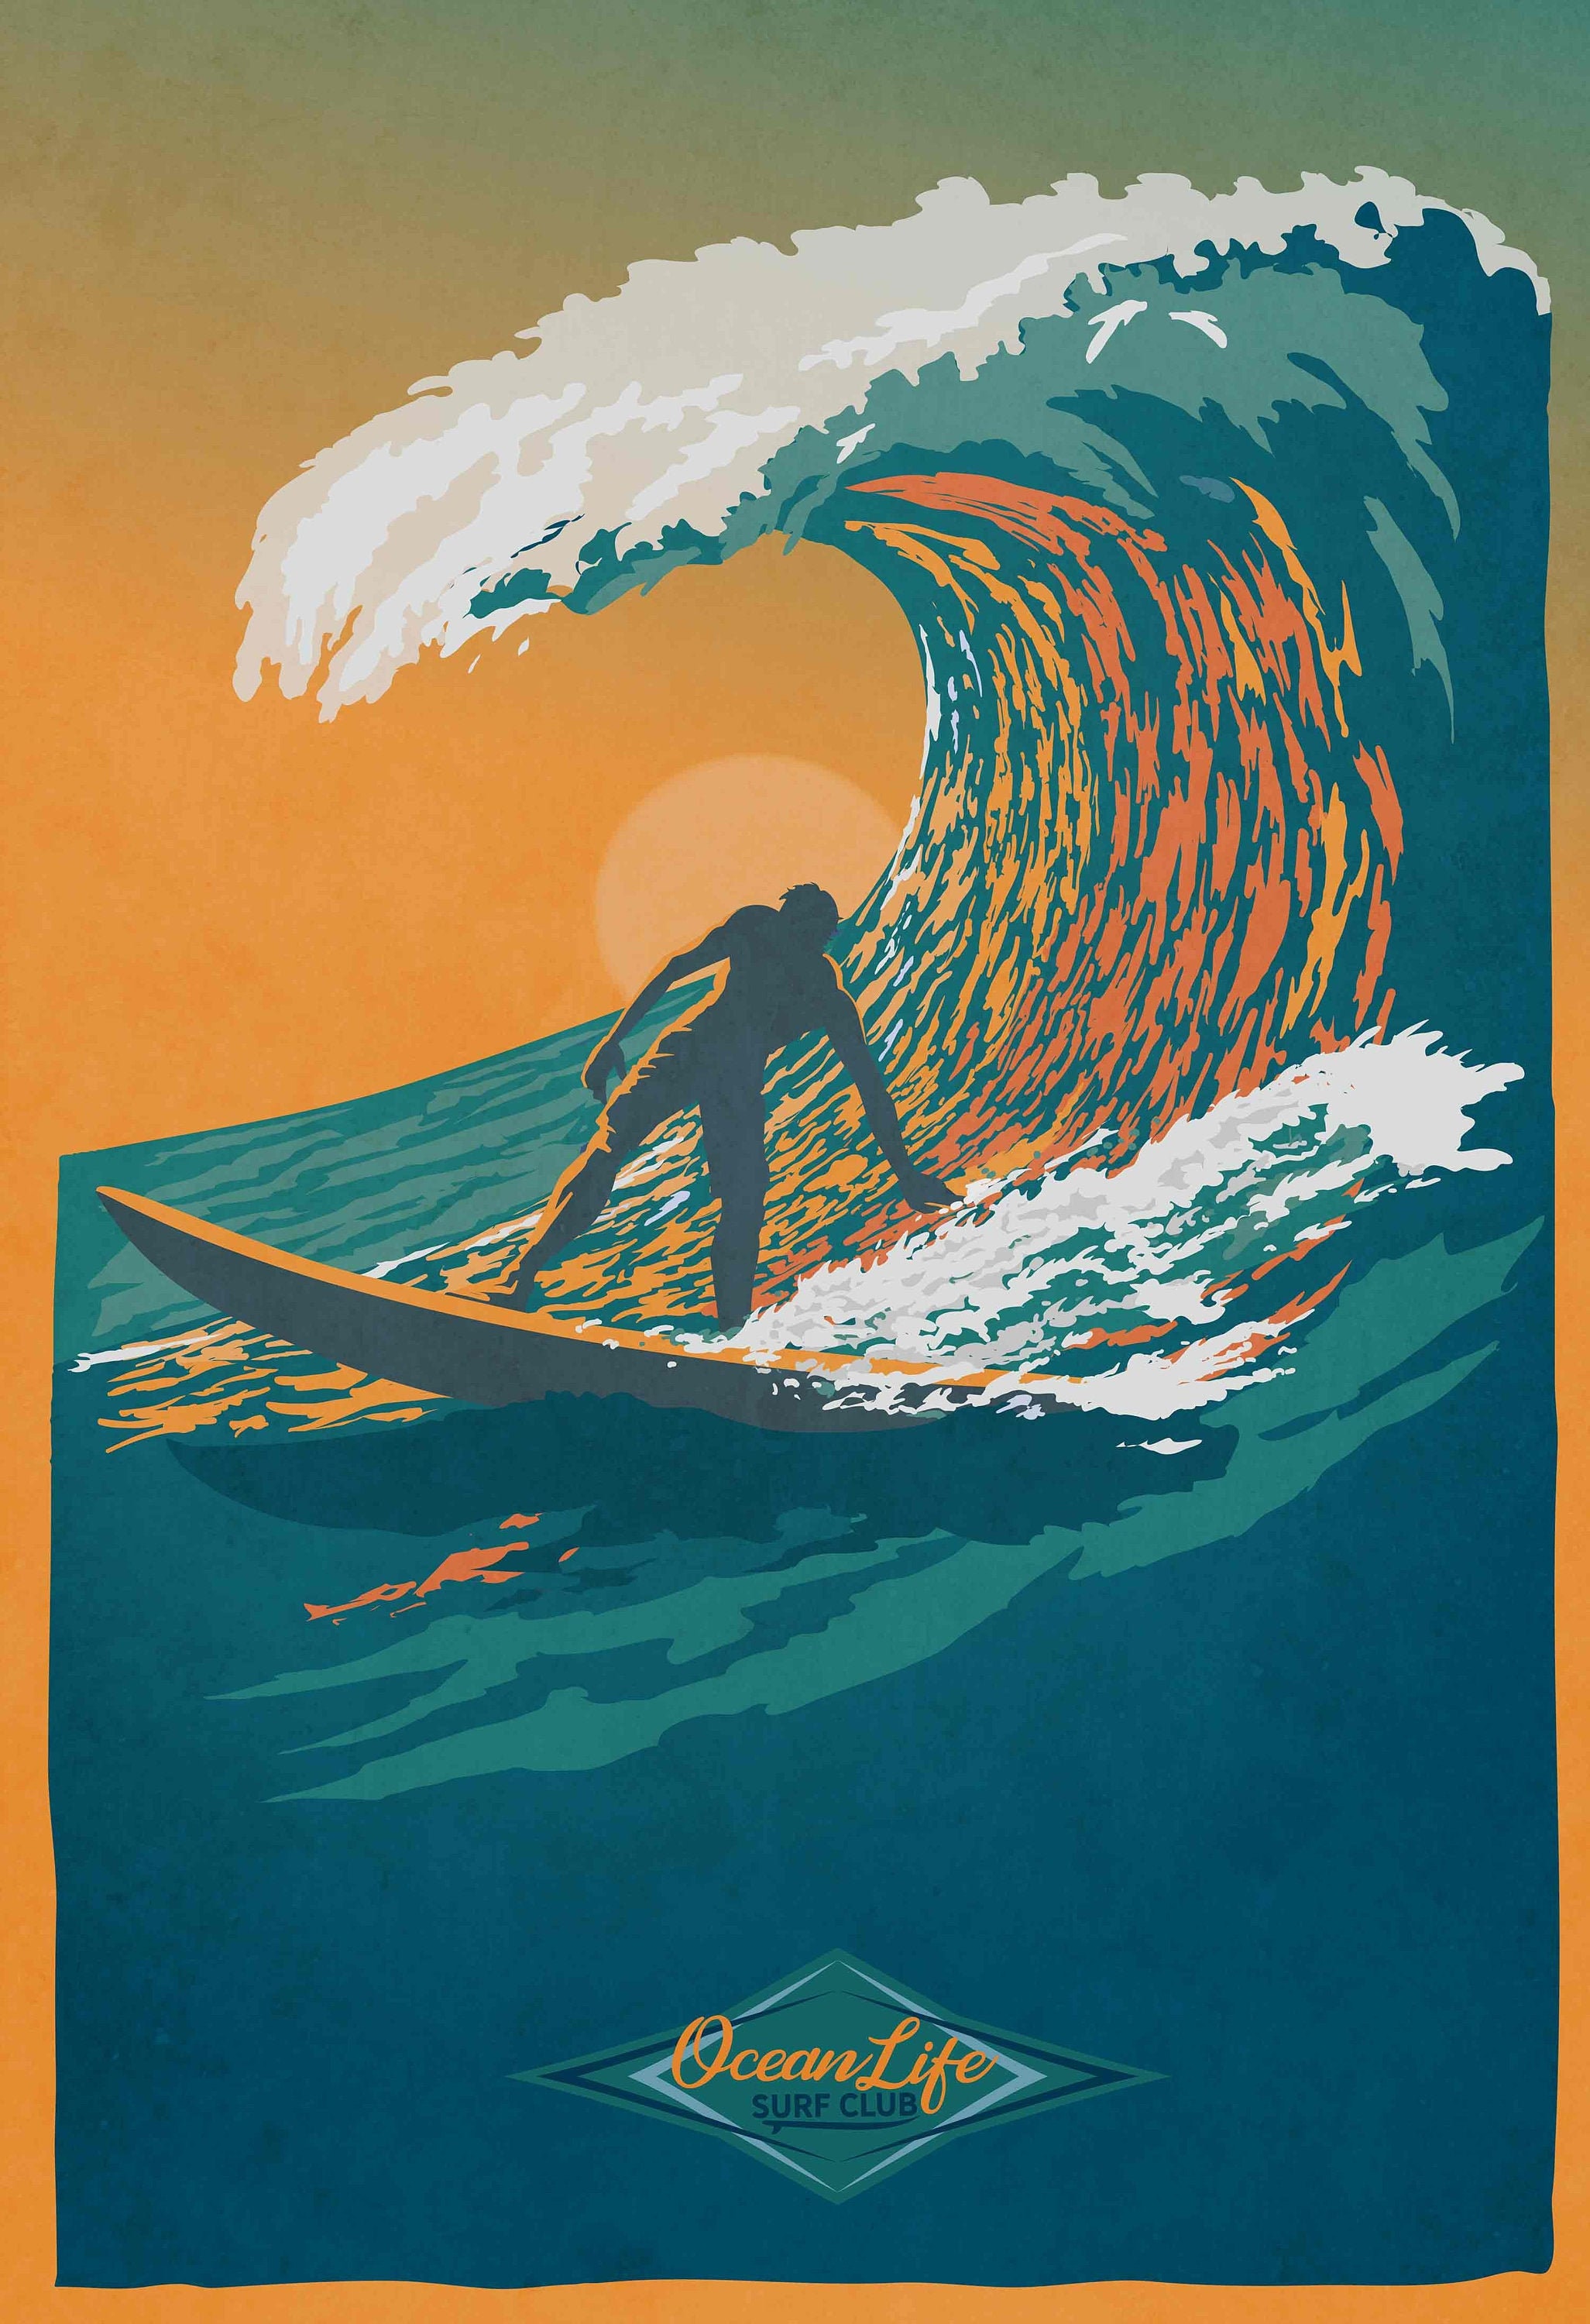 Ocean Life Surf Club Retro Surf Art Poster Illustration Etsy Canada